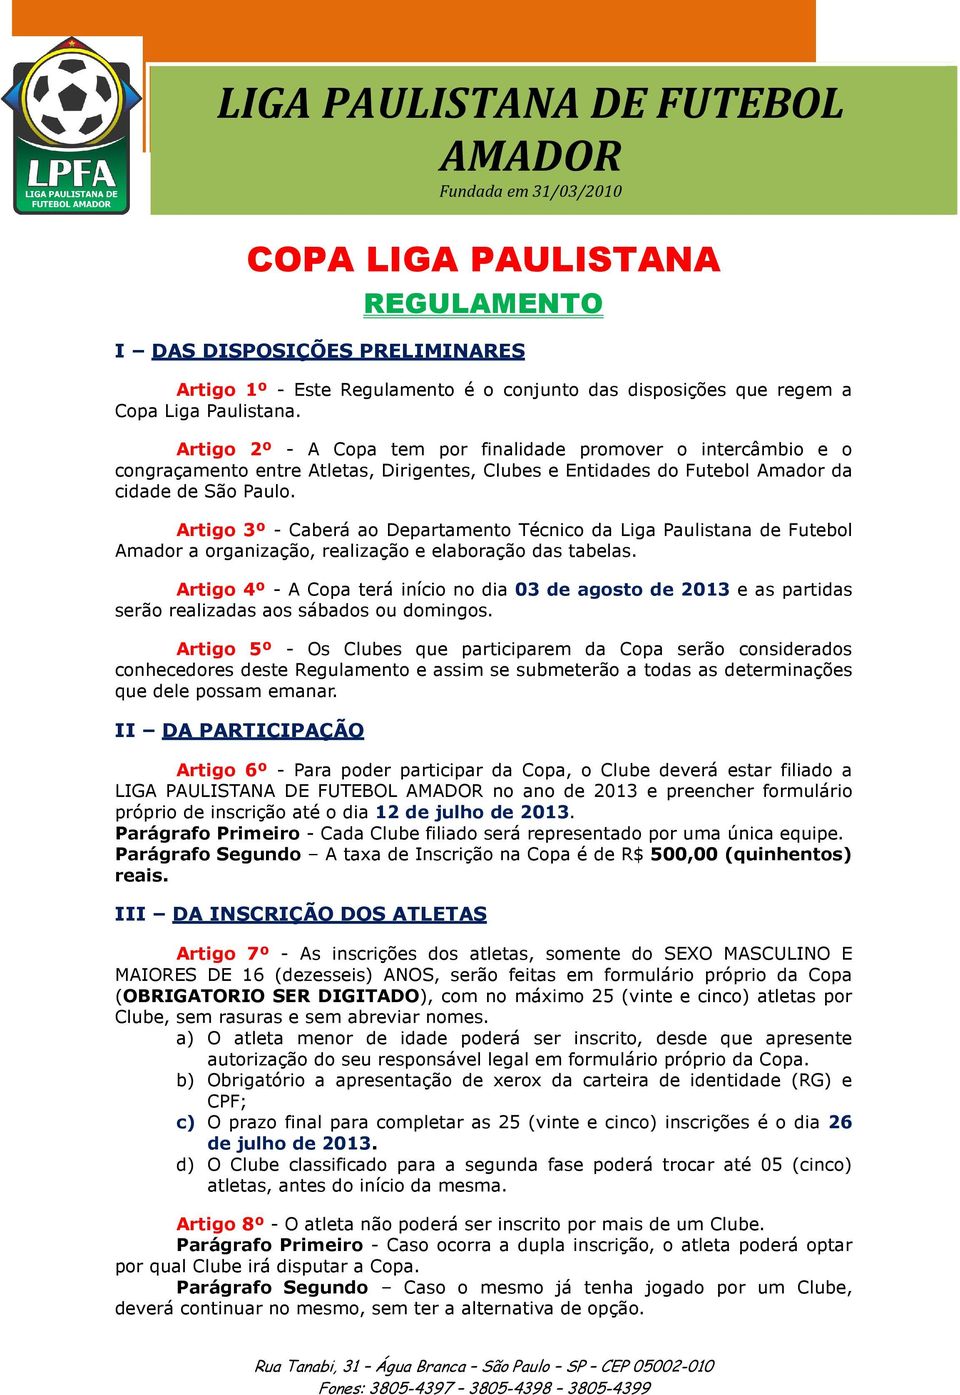 Artigo 3º - Caberá ao Departamento Técnico da Liga Paulistana de Futebol Amador a organização, realização e elaboração das tabelas.